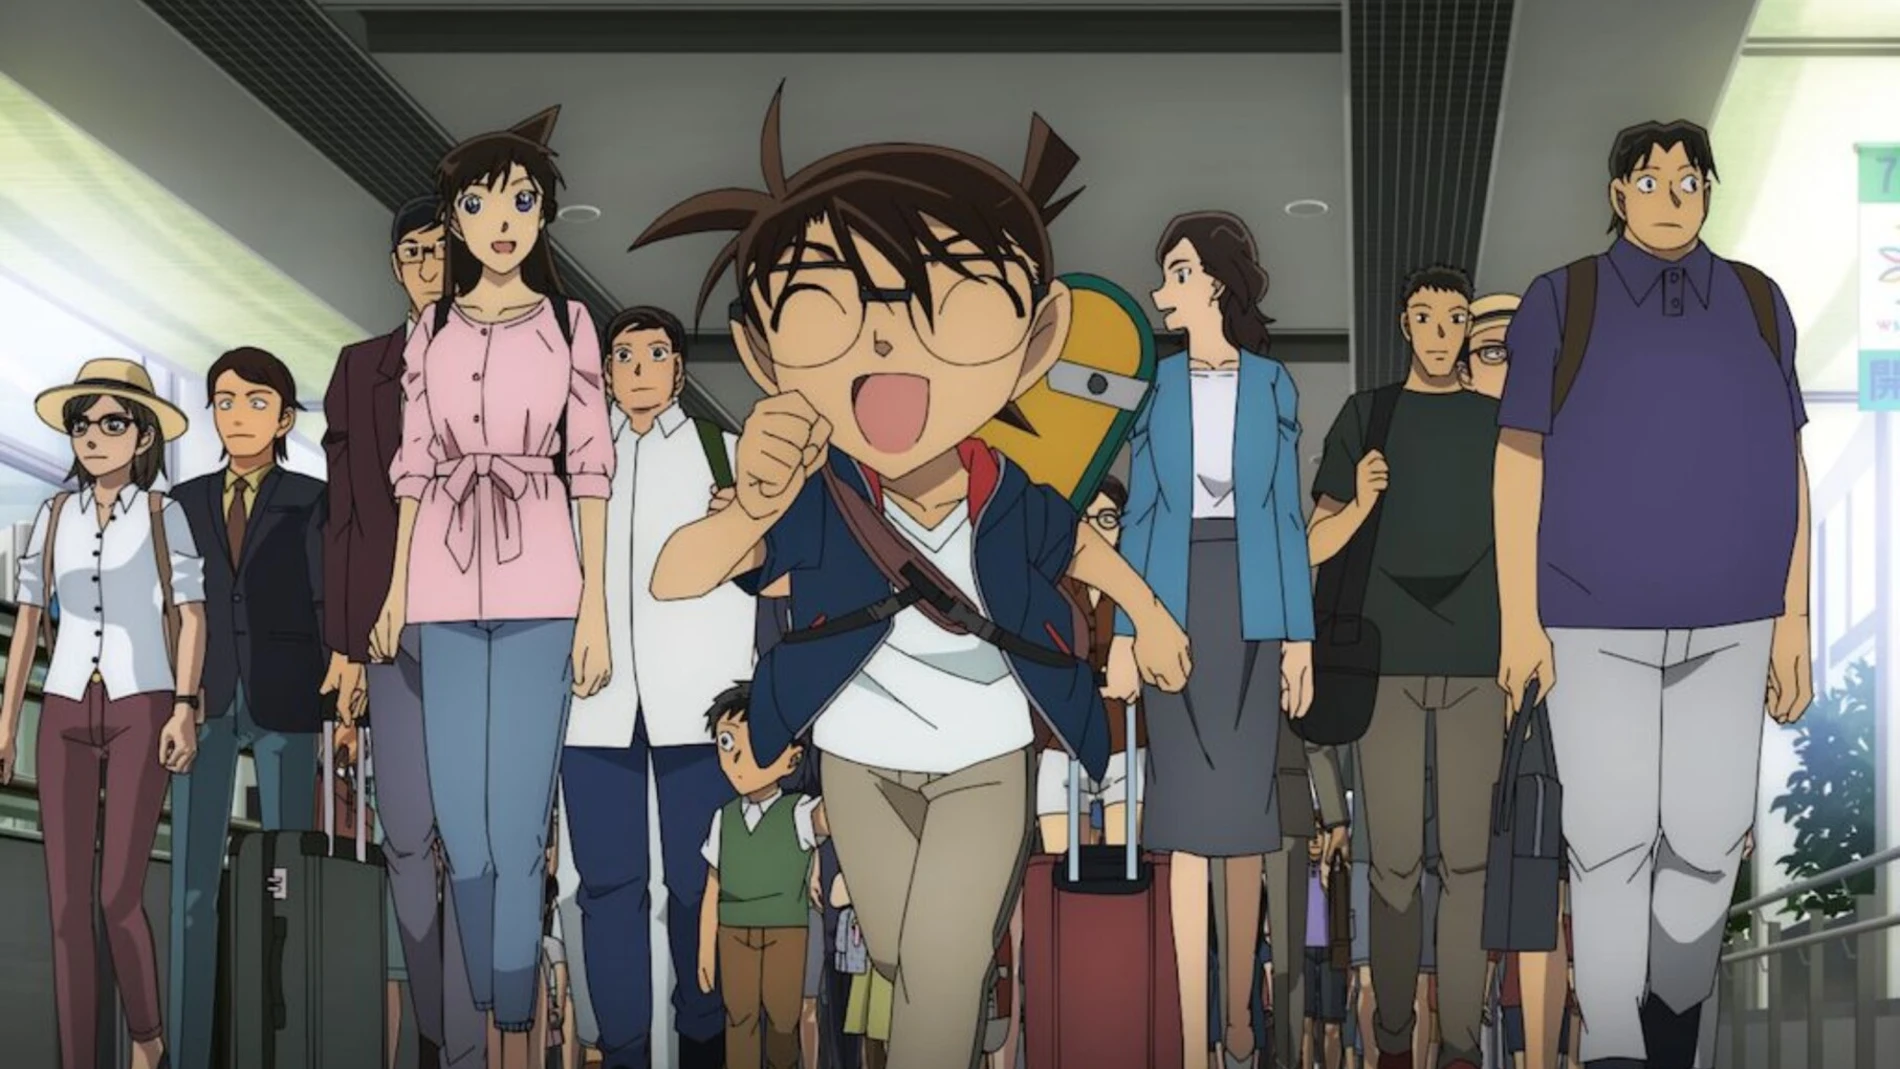 Una nueva adaptación cinematográfica del anime y manga "Detective Conan" se estrena este 16 de abril